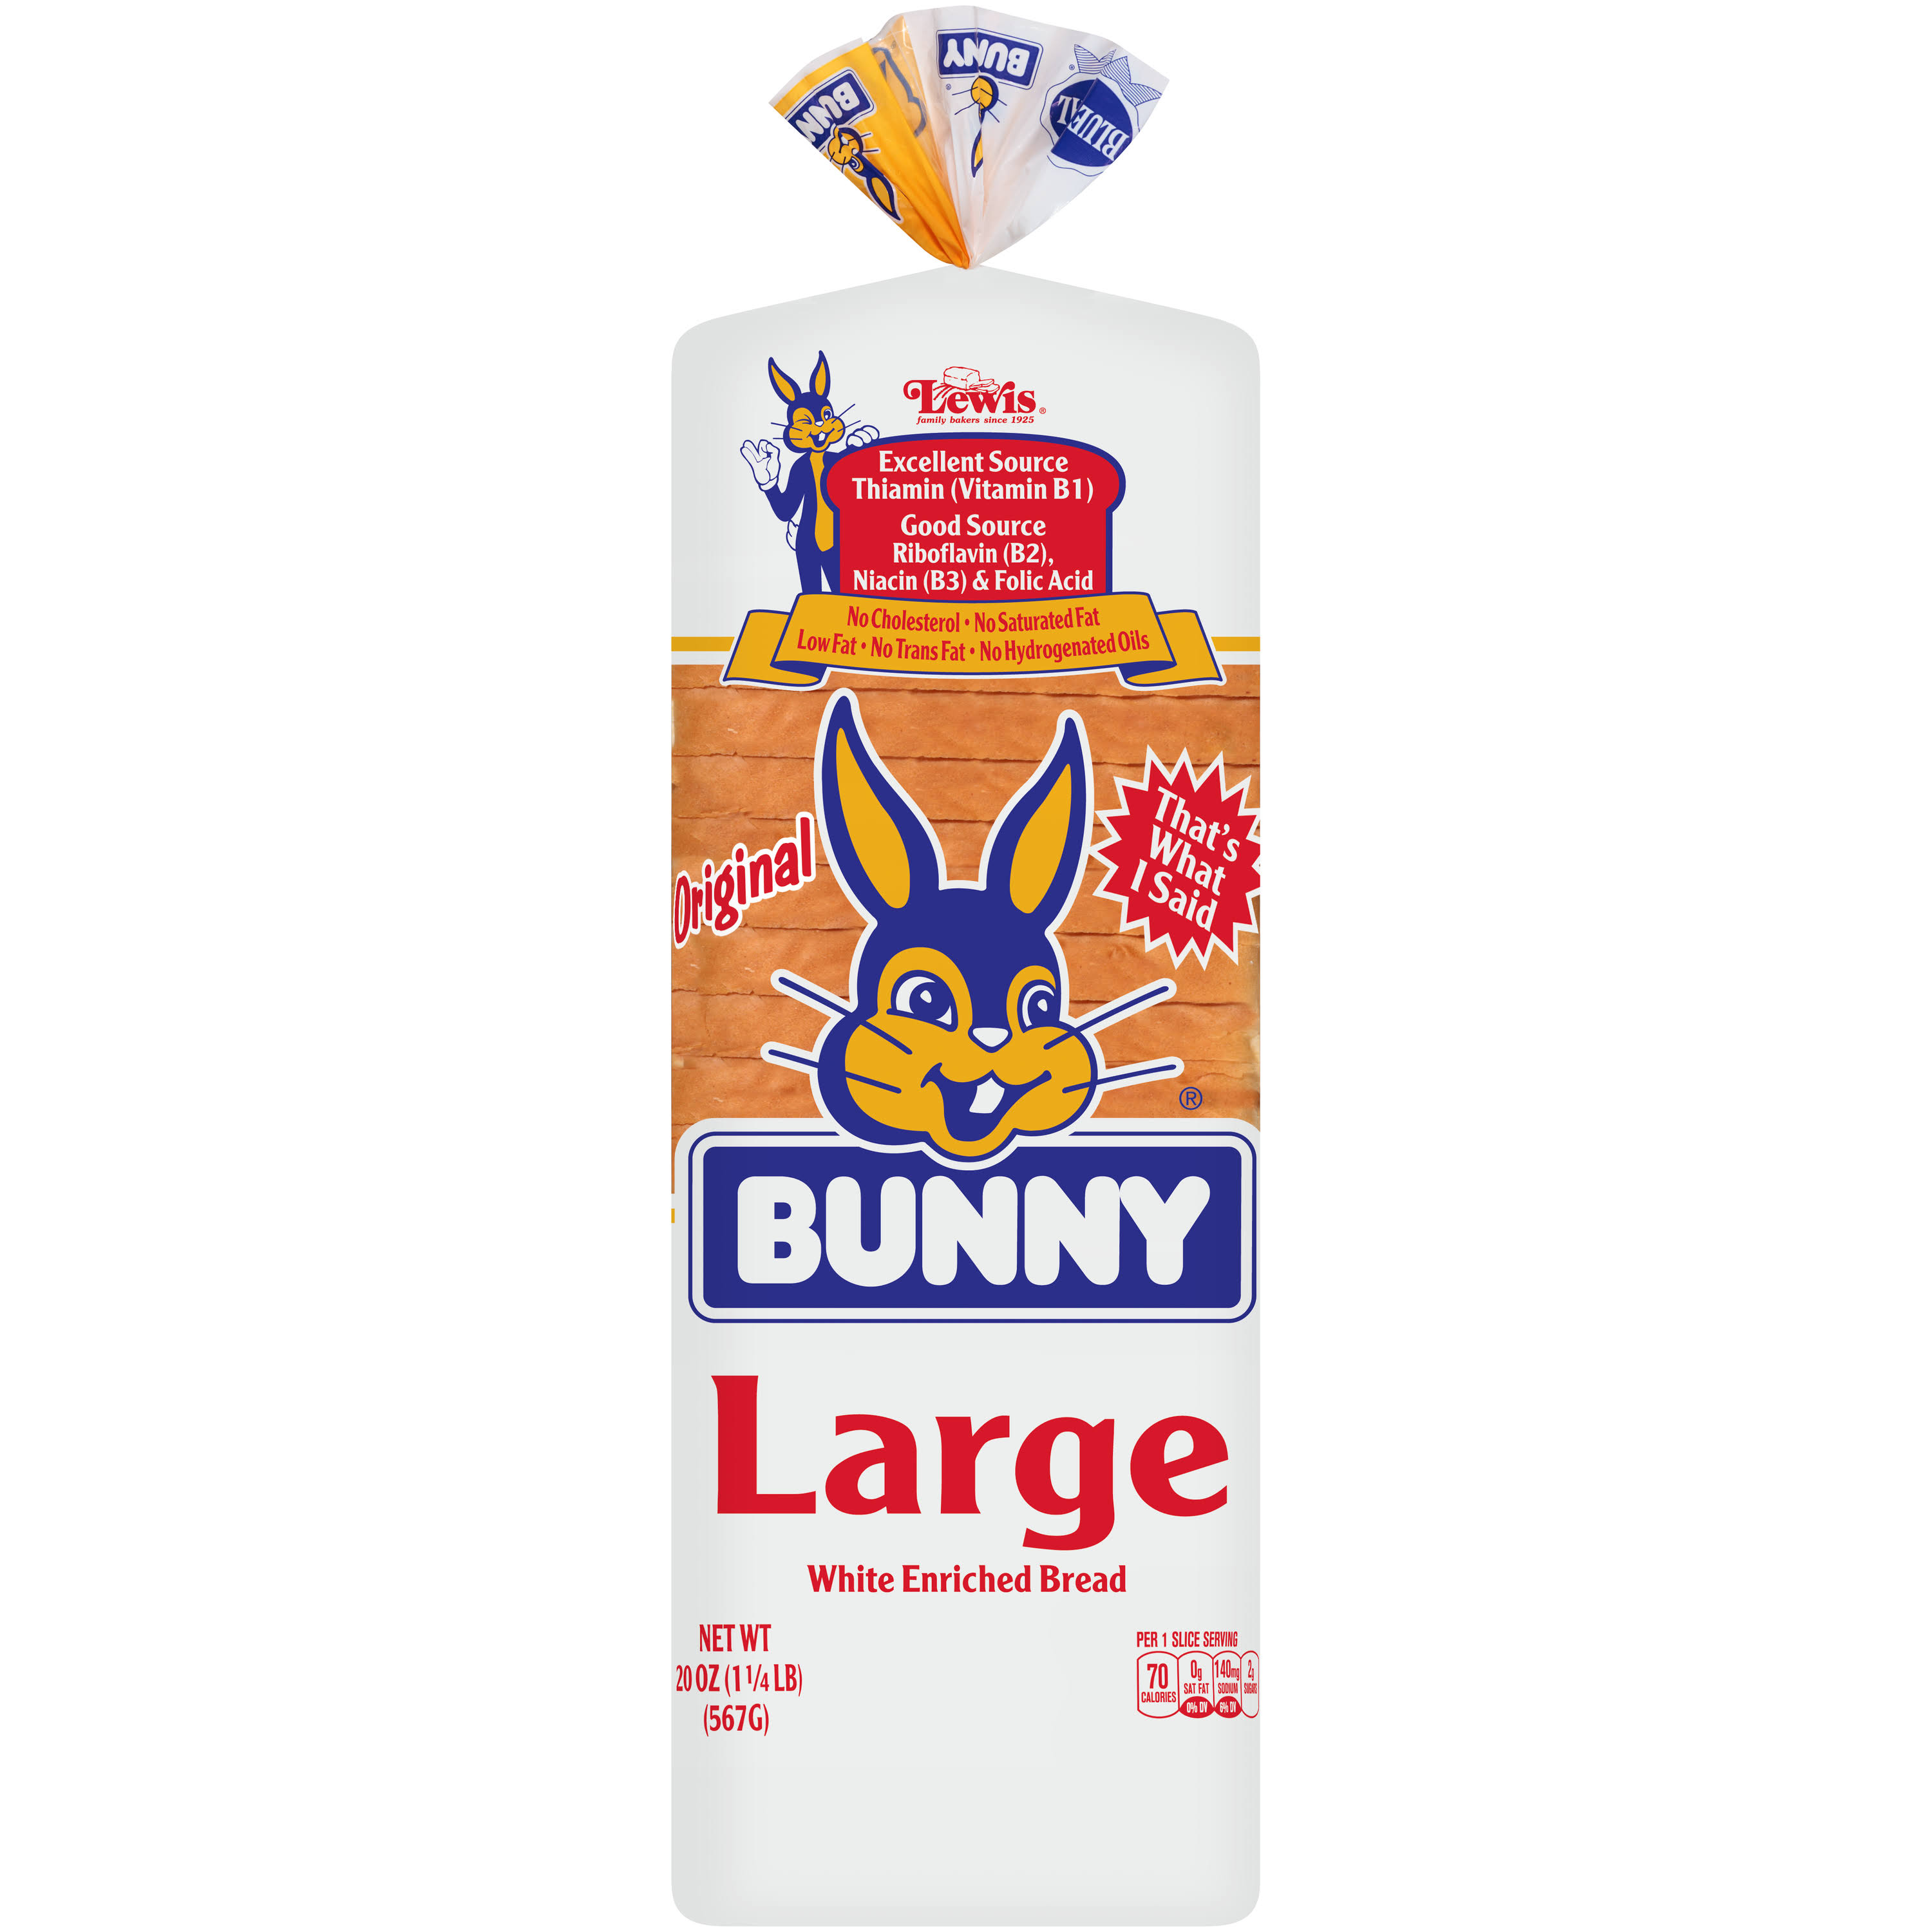 Bunny Original White Bread - Large, 20oz